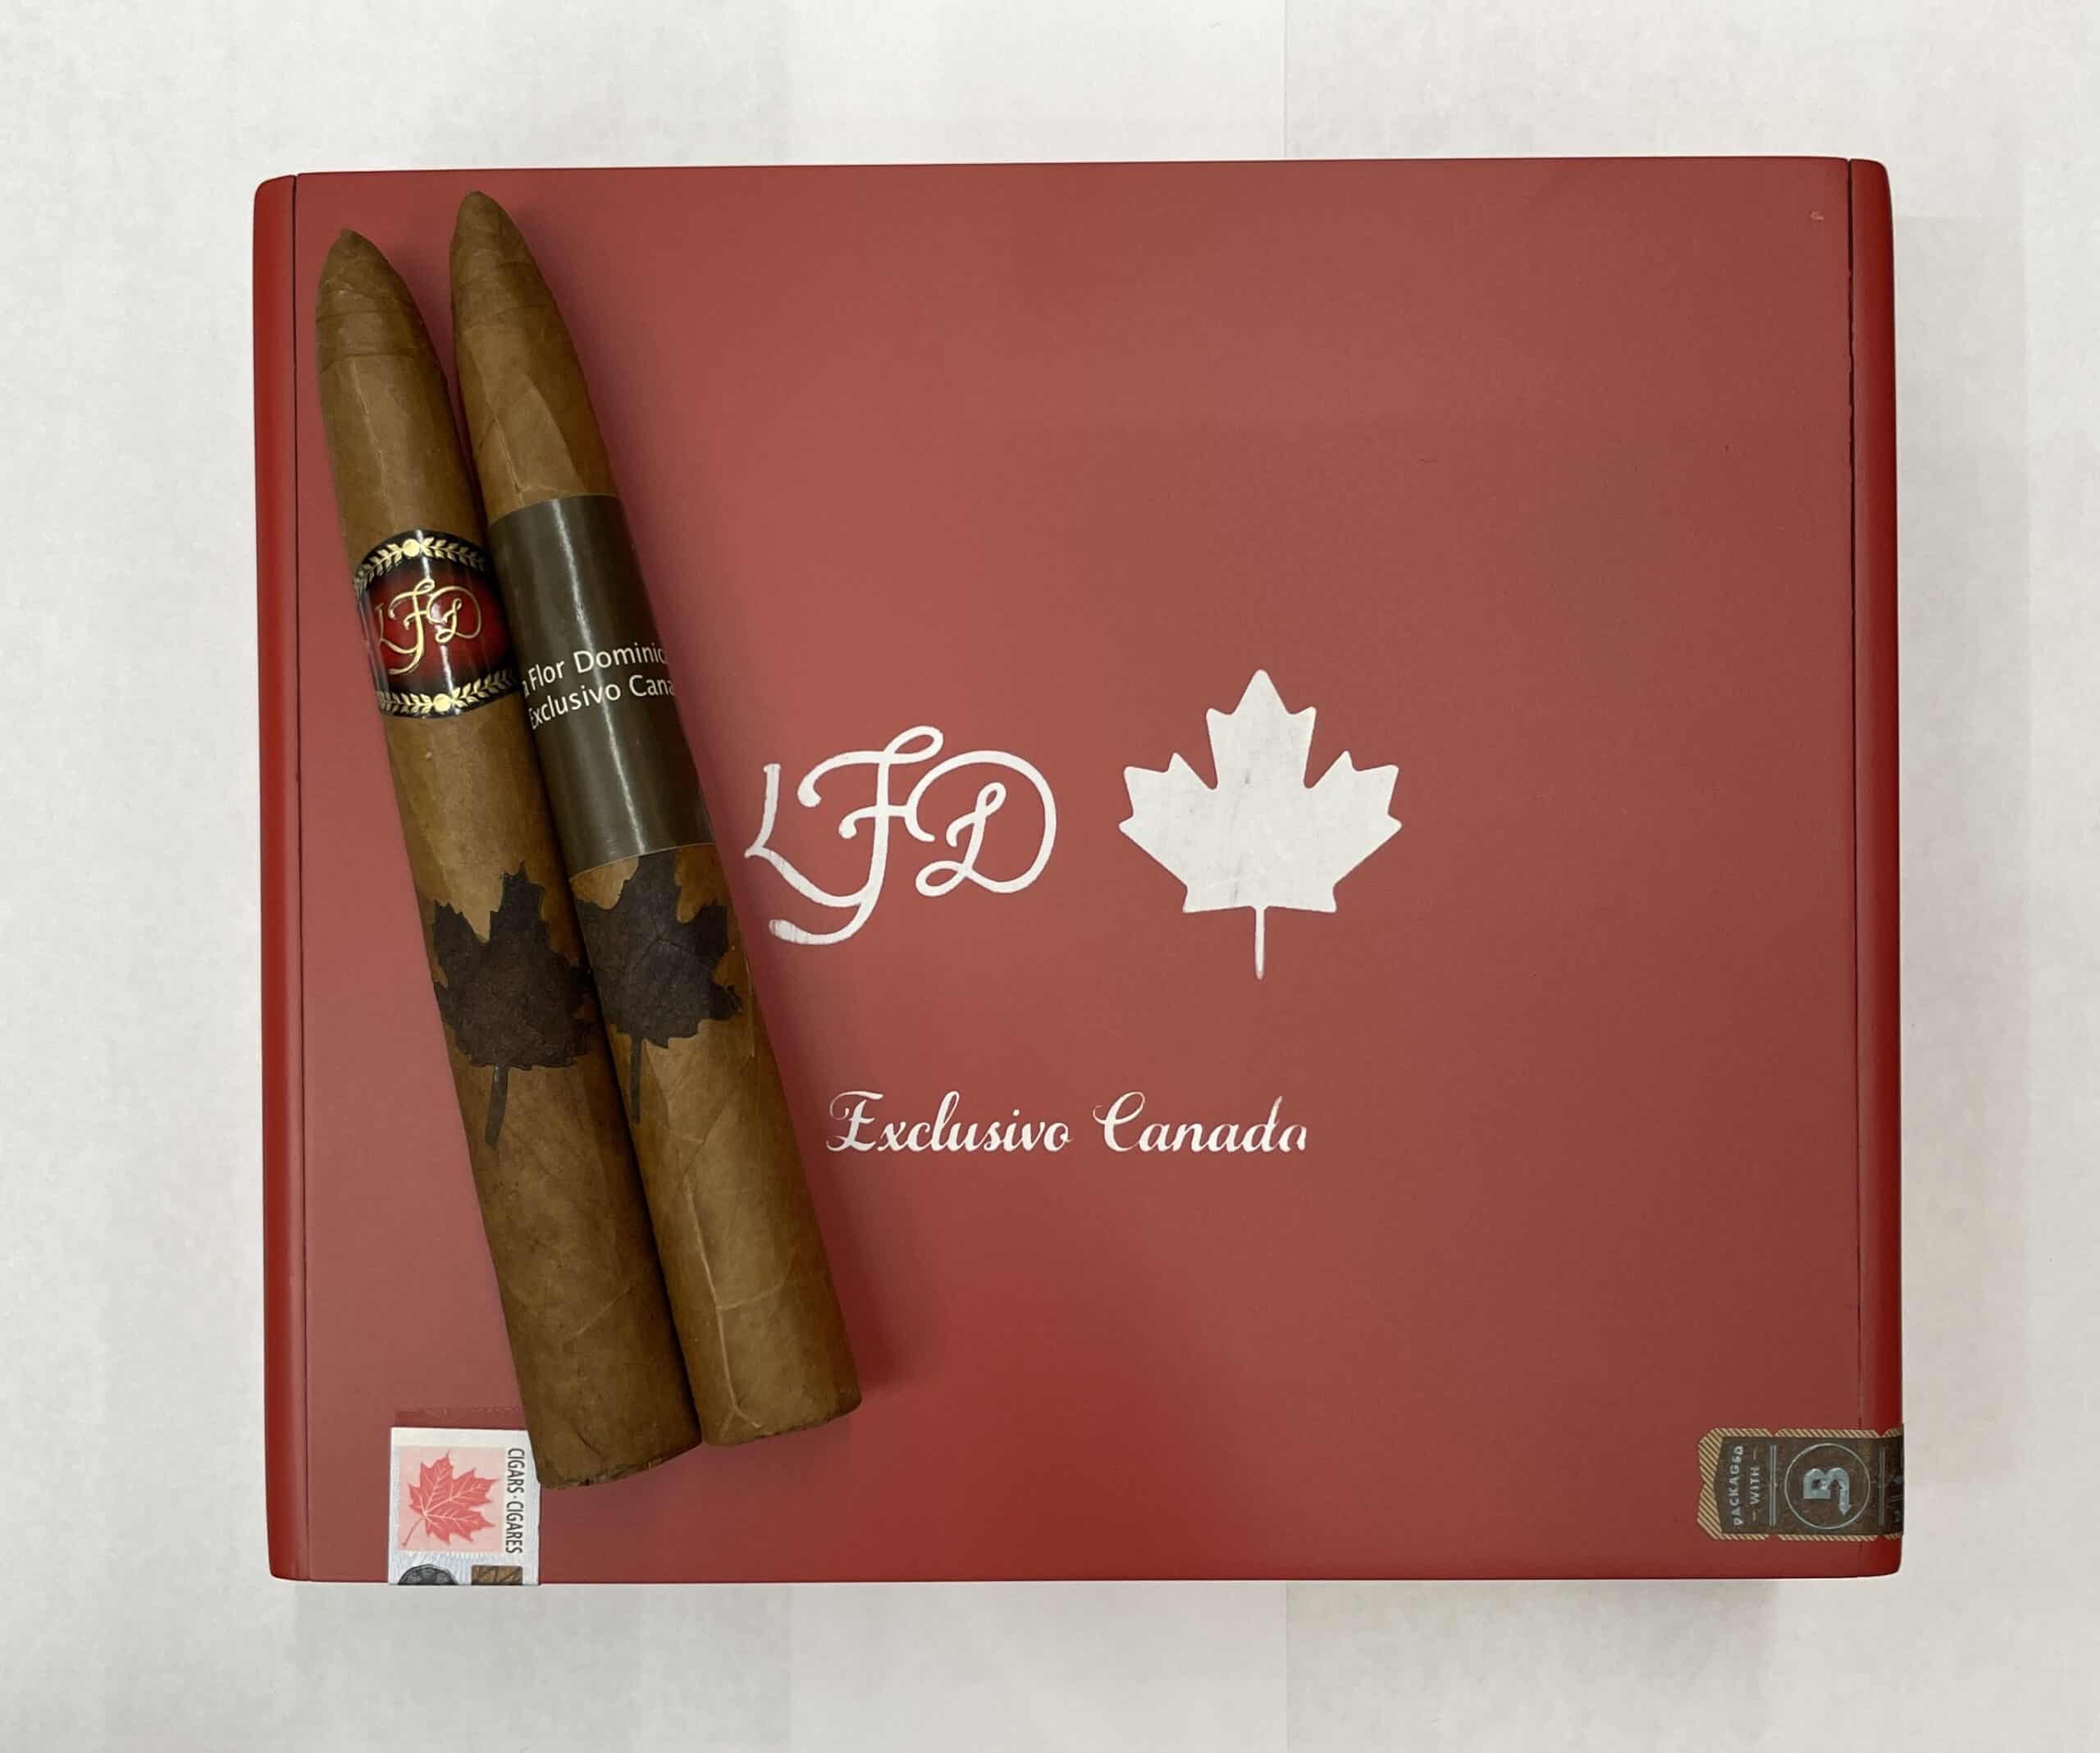 Image en avant pour “La Flor Dominicana introduces its first Canadian exclusive cigar”